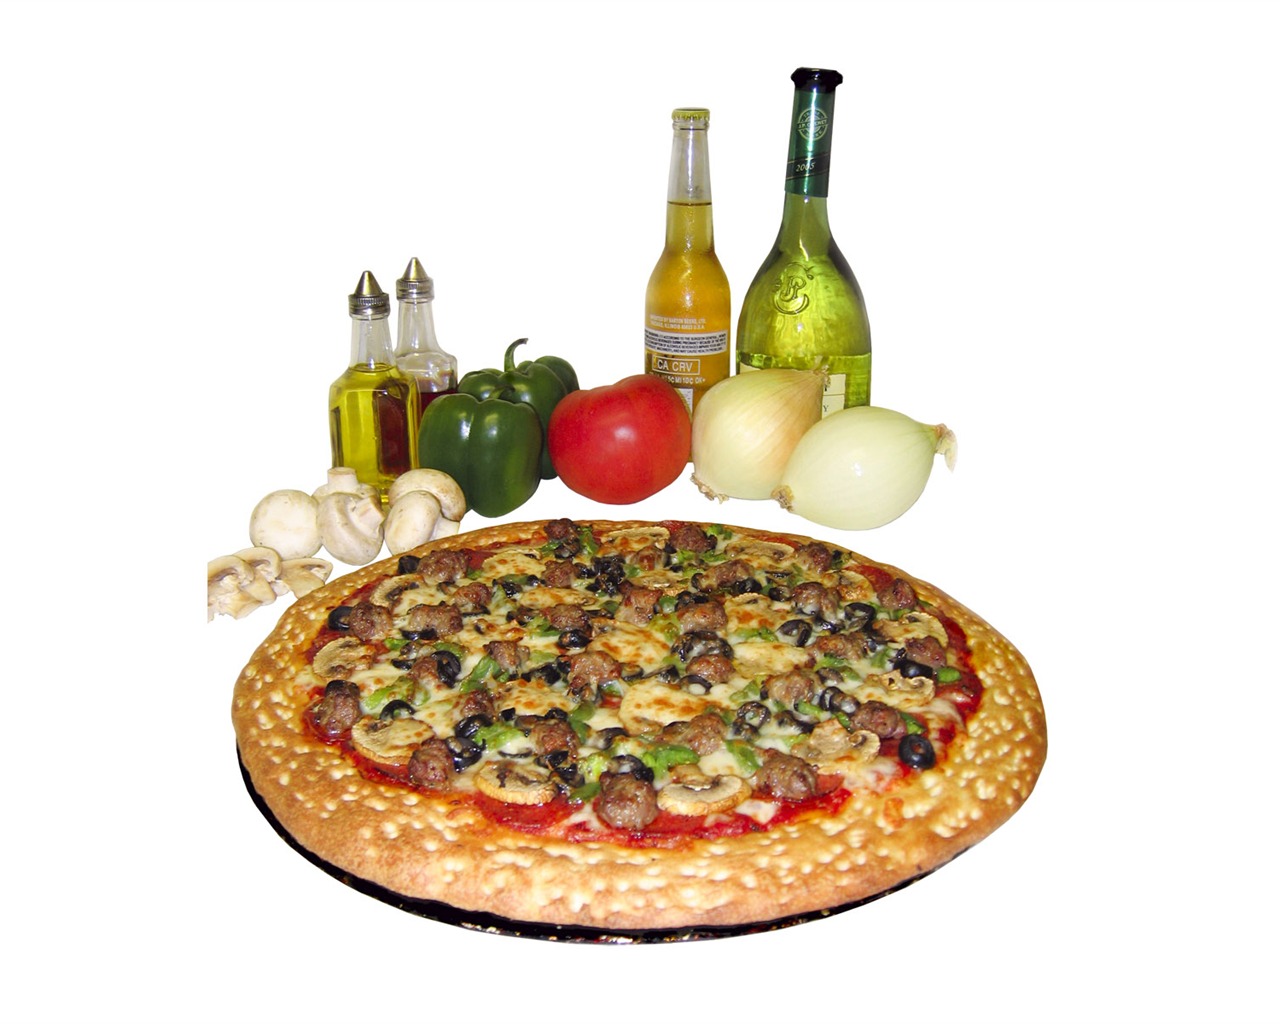 Fondos de pizzerías de Alimentos (3) #11 - 1280x1024